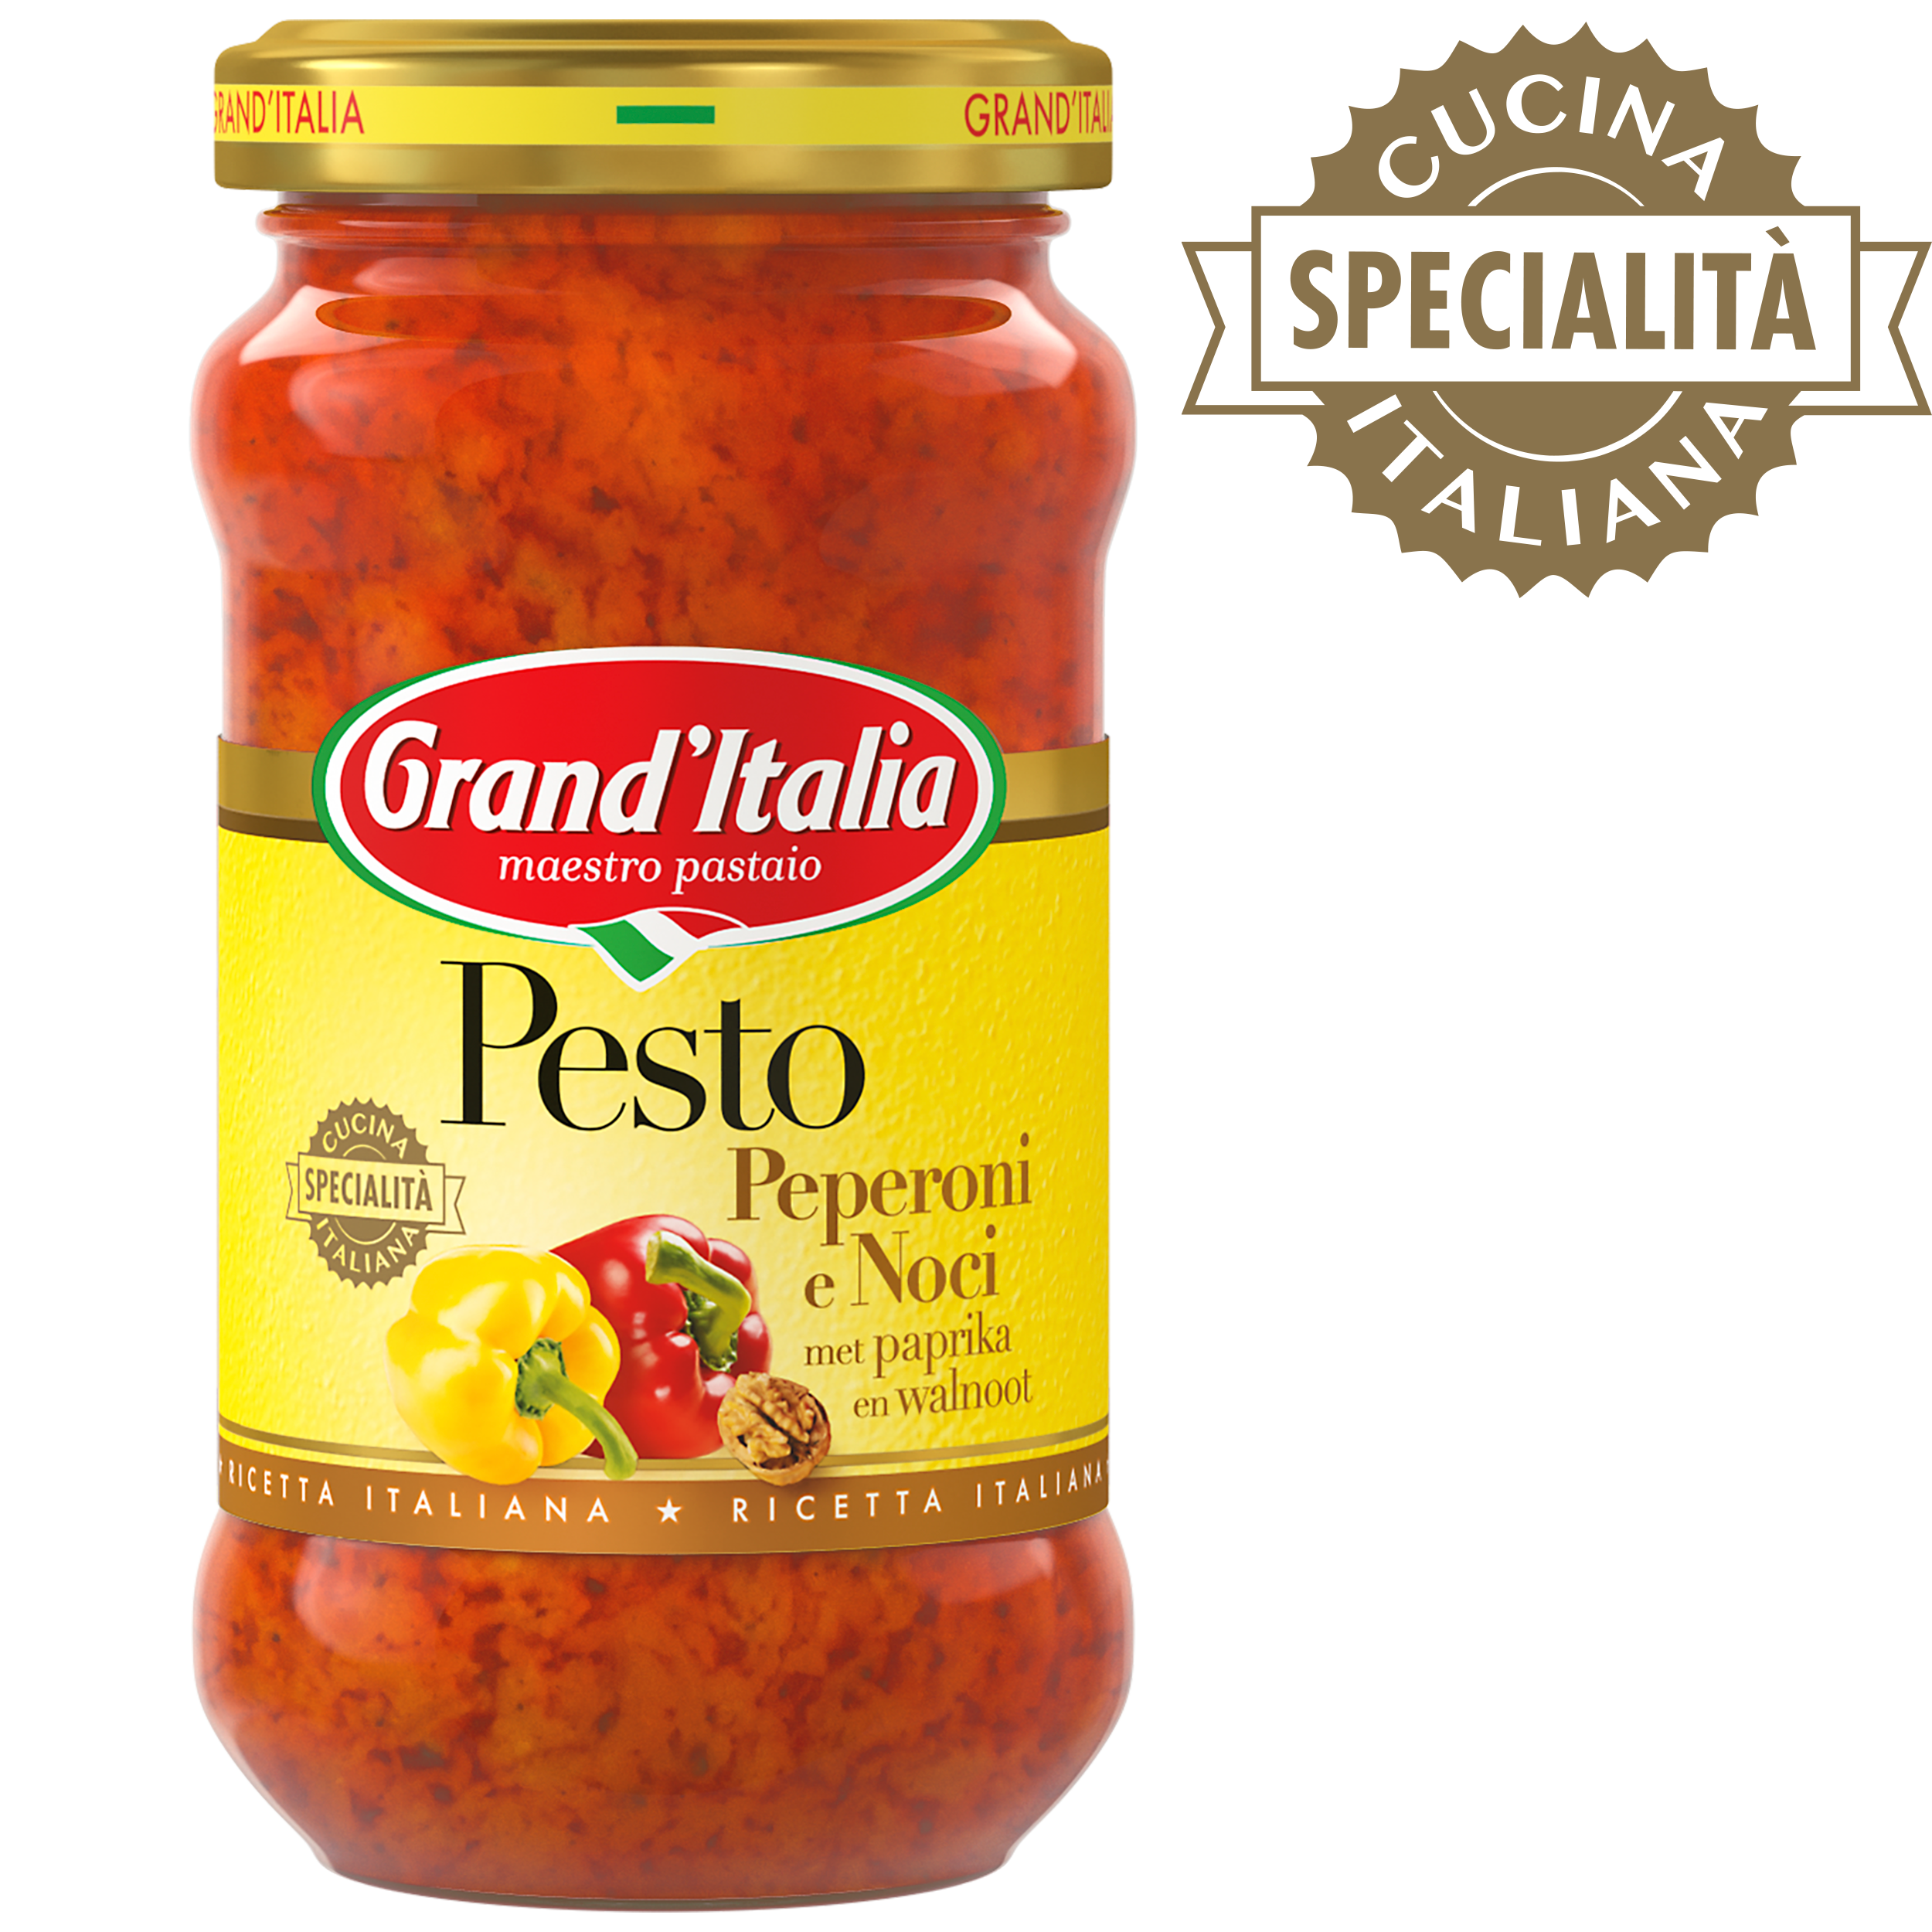 Pesto Peperoni e Noci 185g Grand'Italia - claim